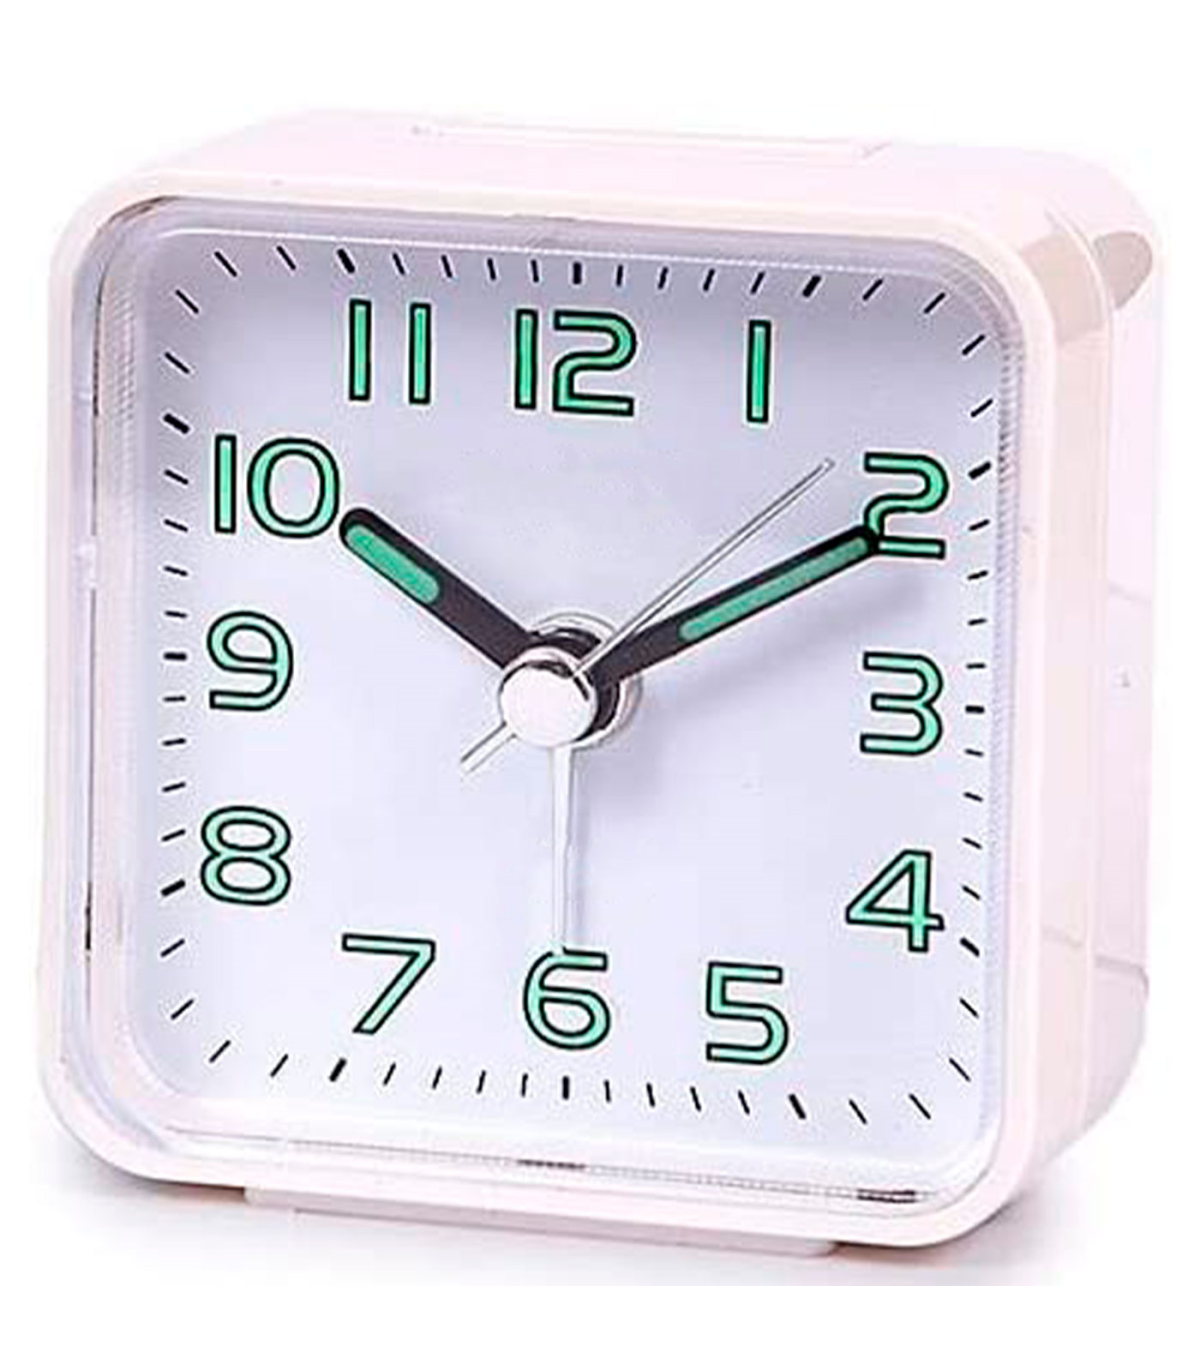 Compre Reloj Despertador Silencioso Con Temperatura, Humedad, Fecha Y Modo  De Repetición y Reloj de China por 8.5 USD